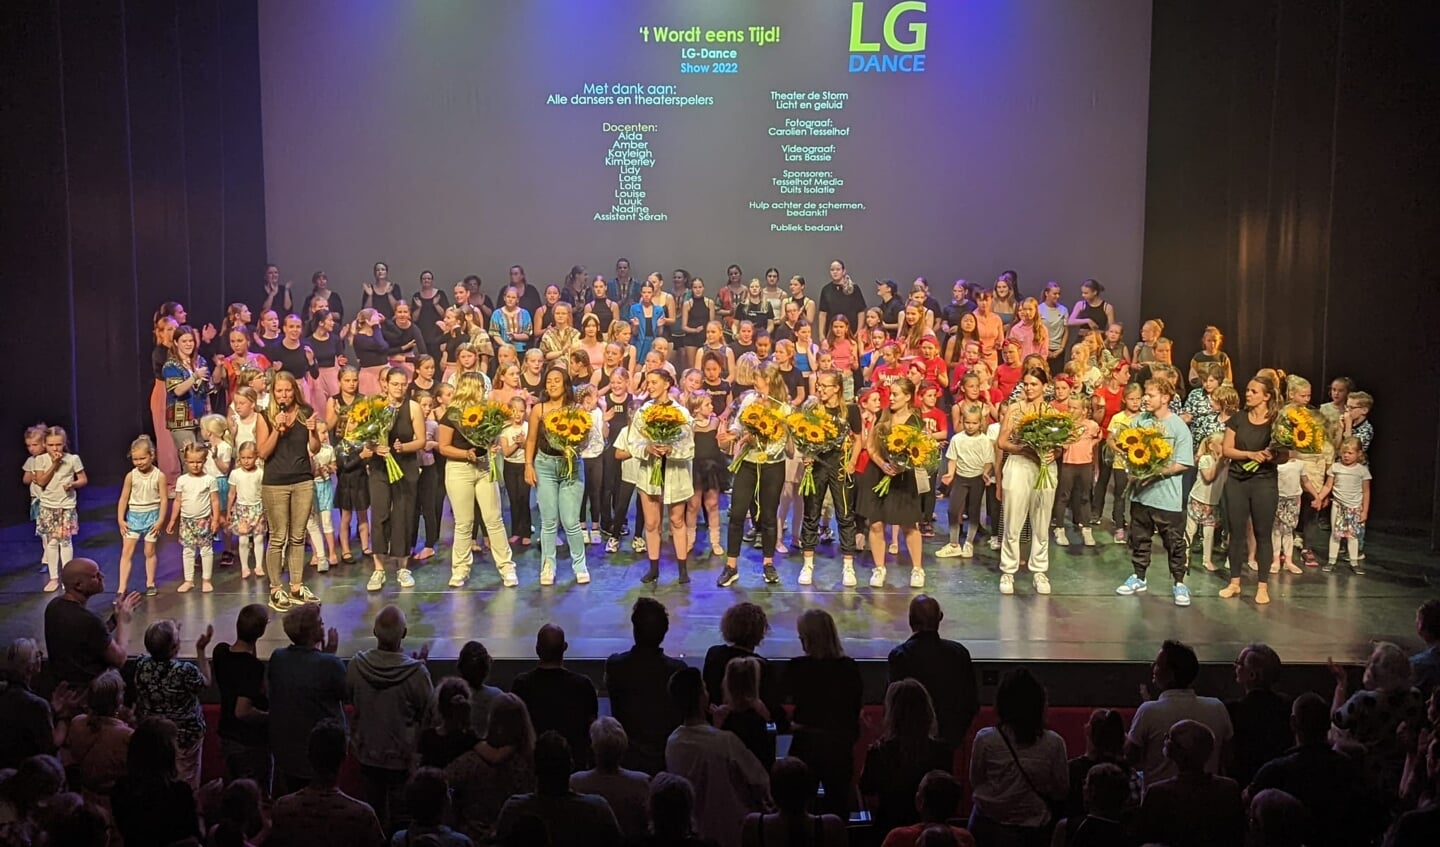 Staande ovatie na het spetterende optreden van LG Dance. Foto: PR